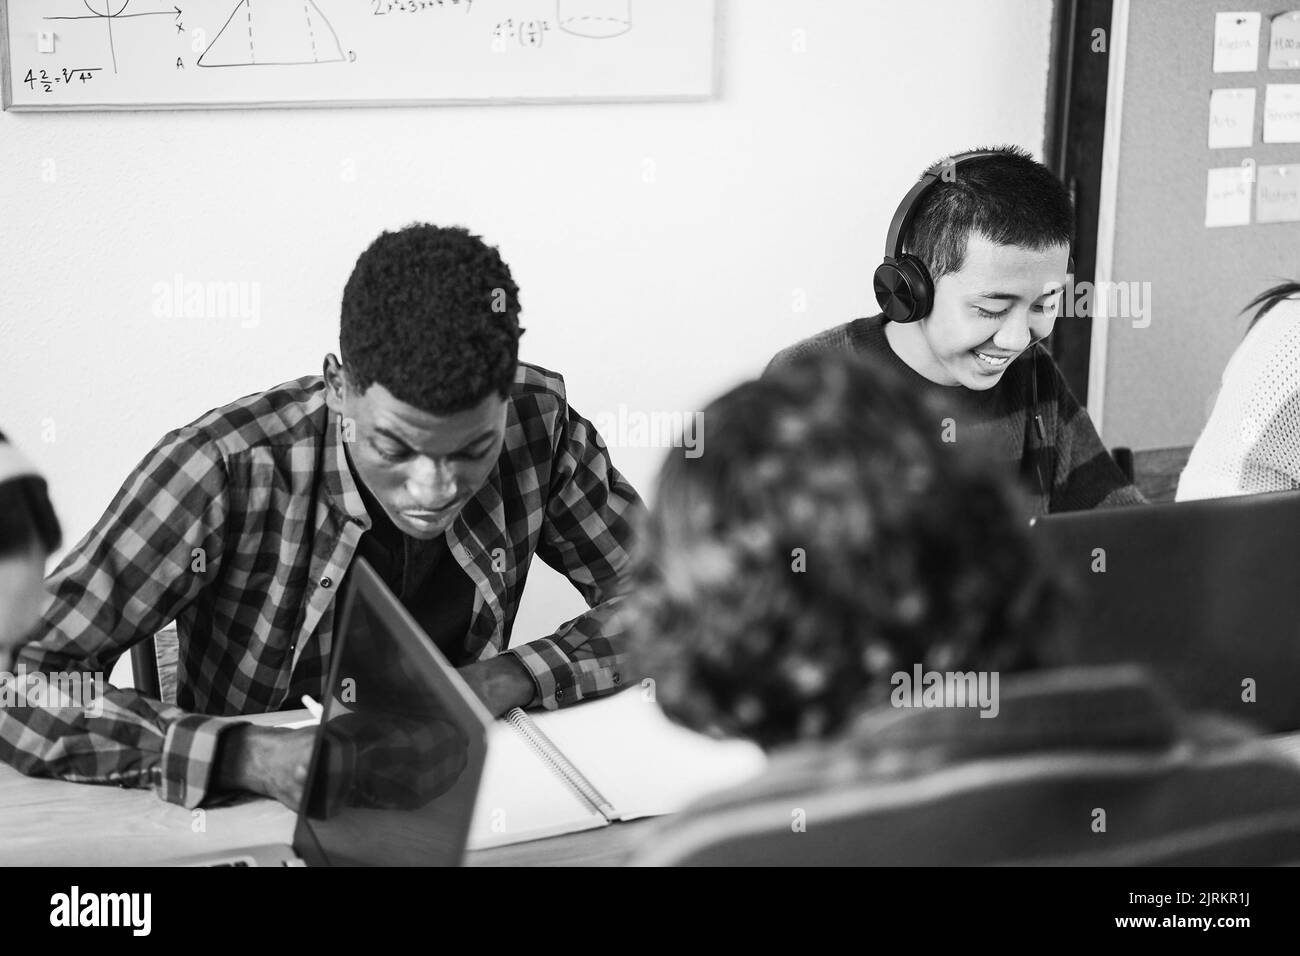 Studenti multirazziali che utilizzano computer portatili mentre studiano insieme a scuola - Focus sul volto asiatico - editing in bianco e nero Foto Stock